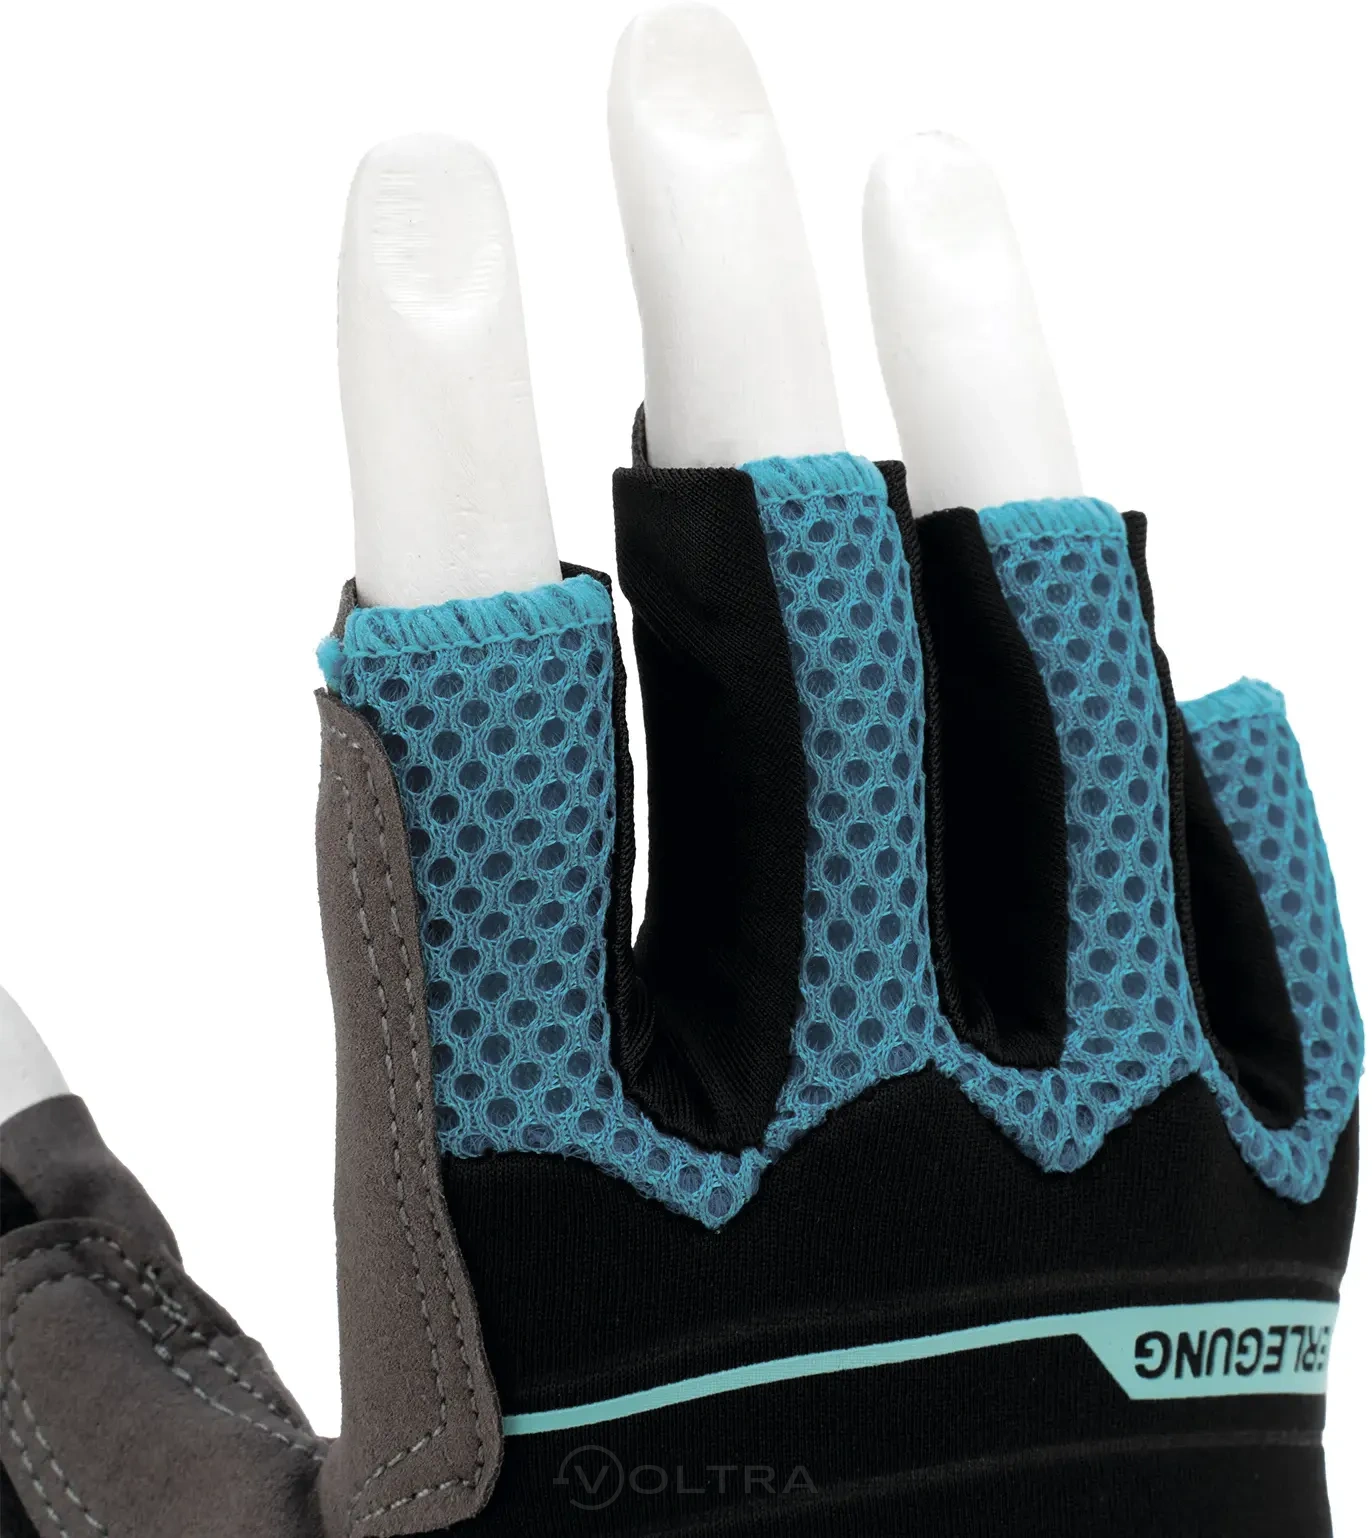 Перчатки комбинированные облегченные открытые пальцы AKTIV размер L (9) Gross (90309)